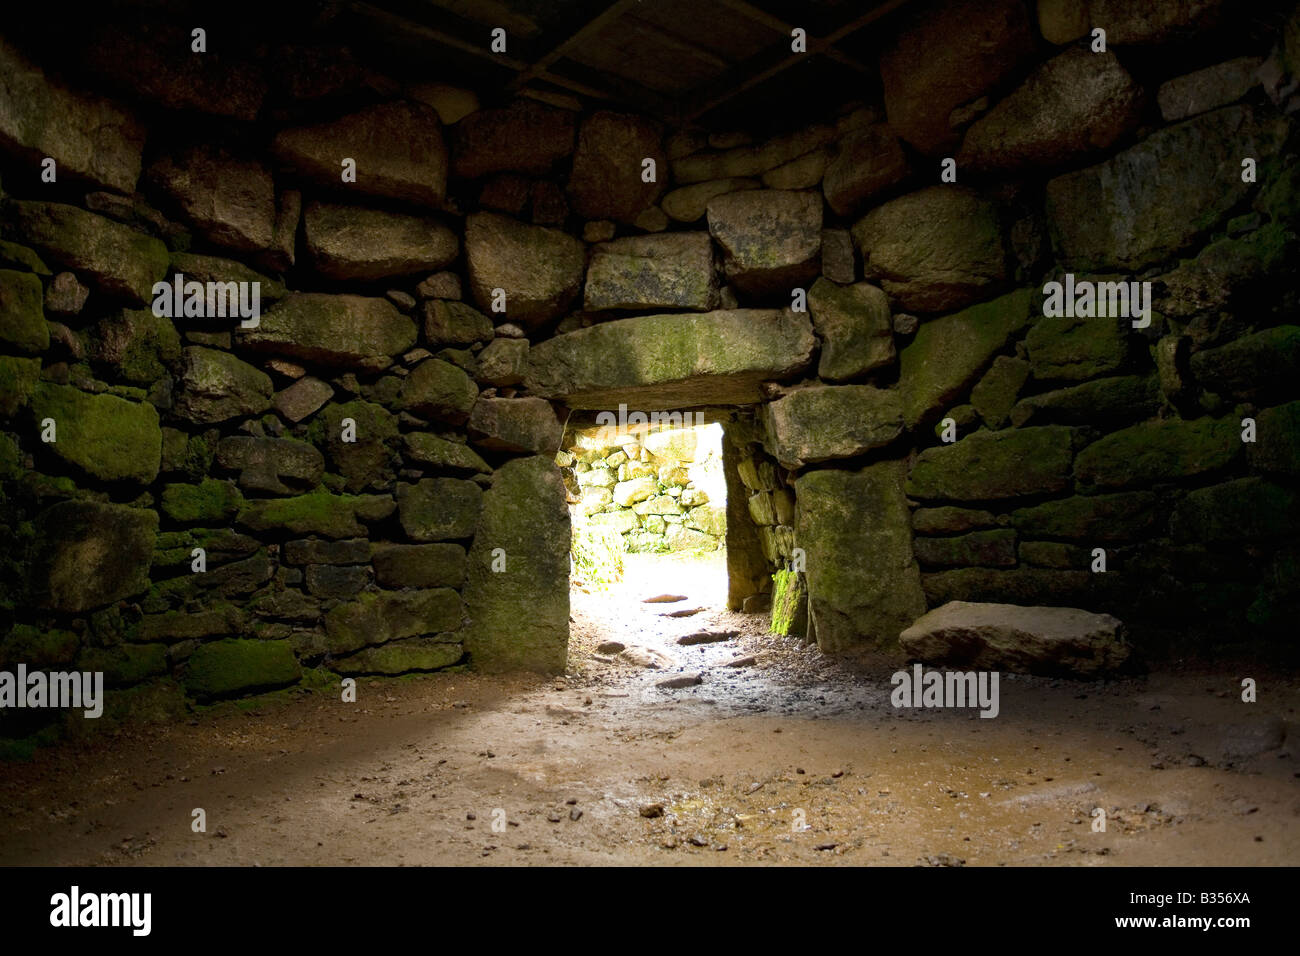 Carn Euny poblado de la Edad de Piedra redonda subterránea cámara cerca Sancreed West Penwith Cornwall Inglaterra Foto de stock